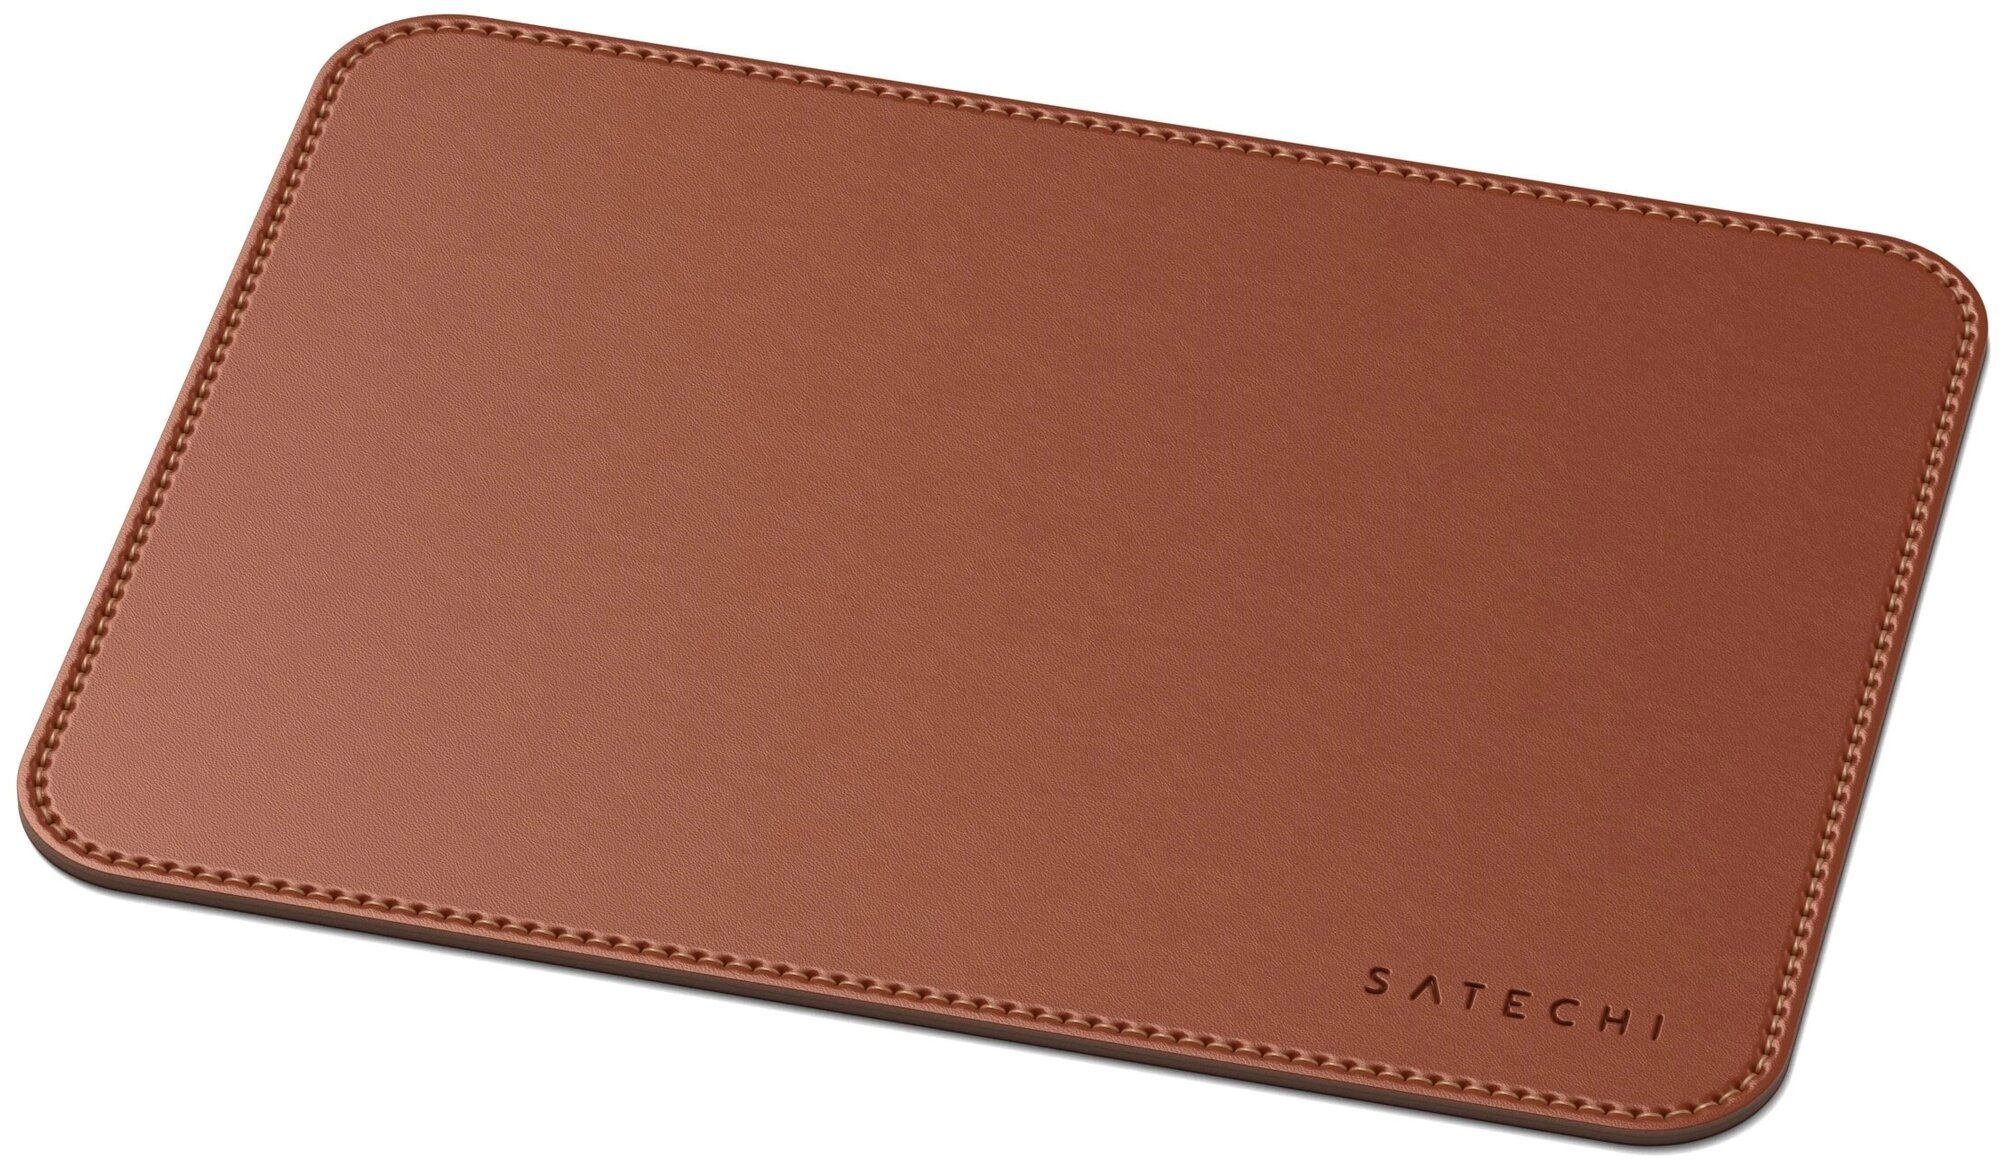 Коврик Satechi Eco Leather Mouse Pad Размер 25 x 19 см. коричневый.